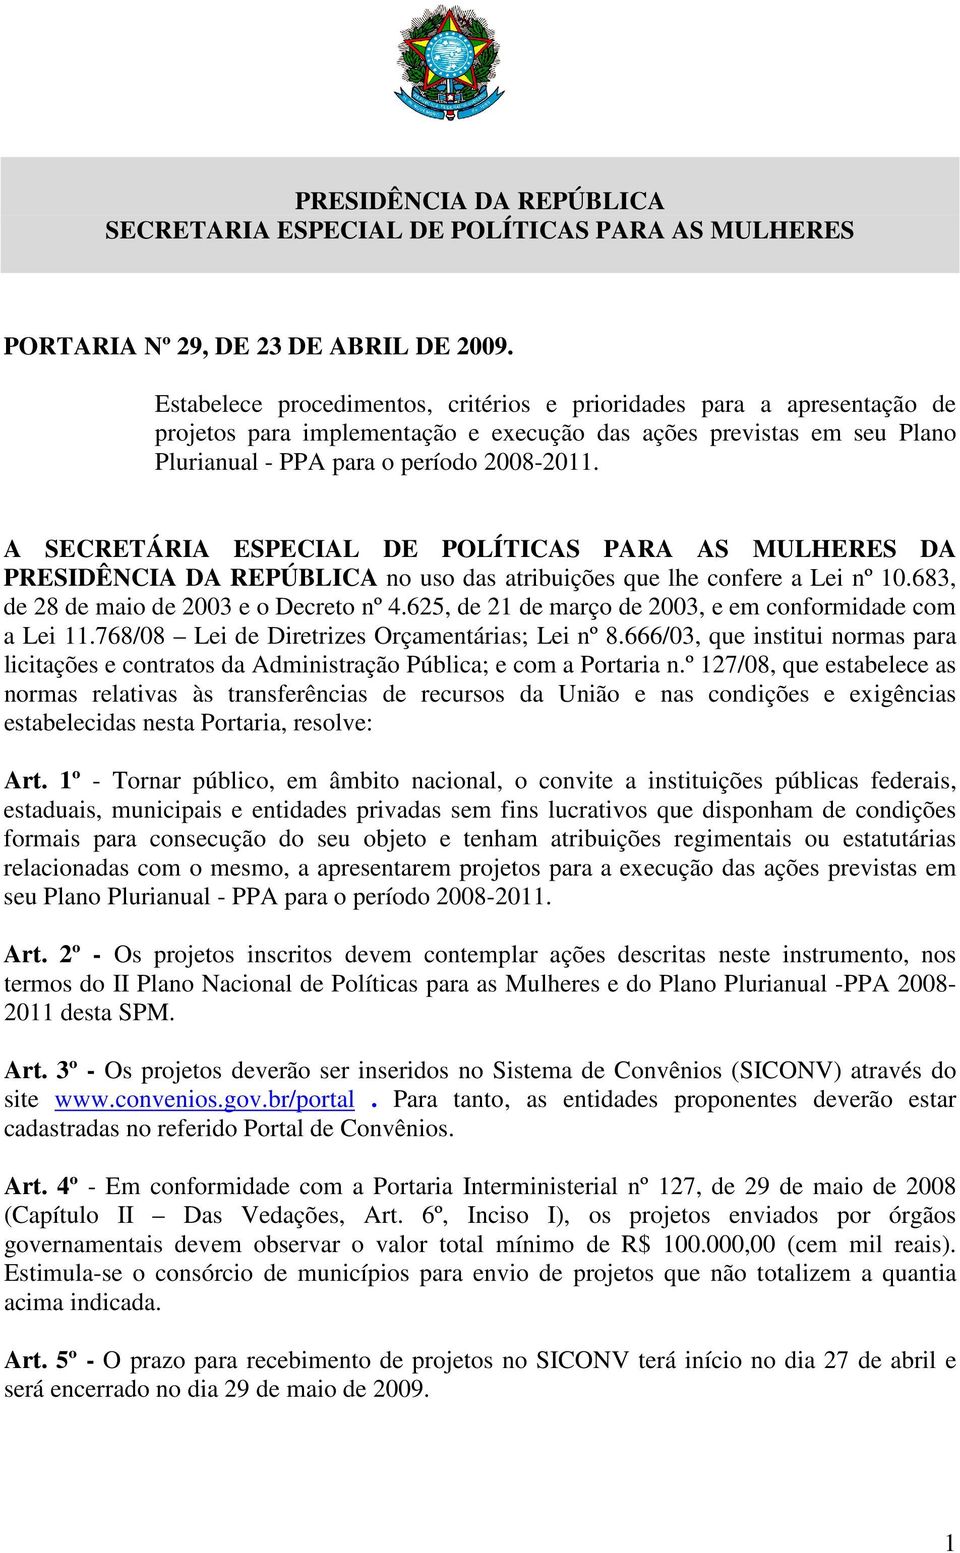 A SECRETÁRIA ESPECIAL DE POLÍTICAS PARA AS MULHERES DA PRESIDÊNCIA DA REPÚBLICA no uso das atribuições que lhe confere a Lei nº 10.683, de 28 de maio de 2003 e o Decreto nº 4.